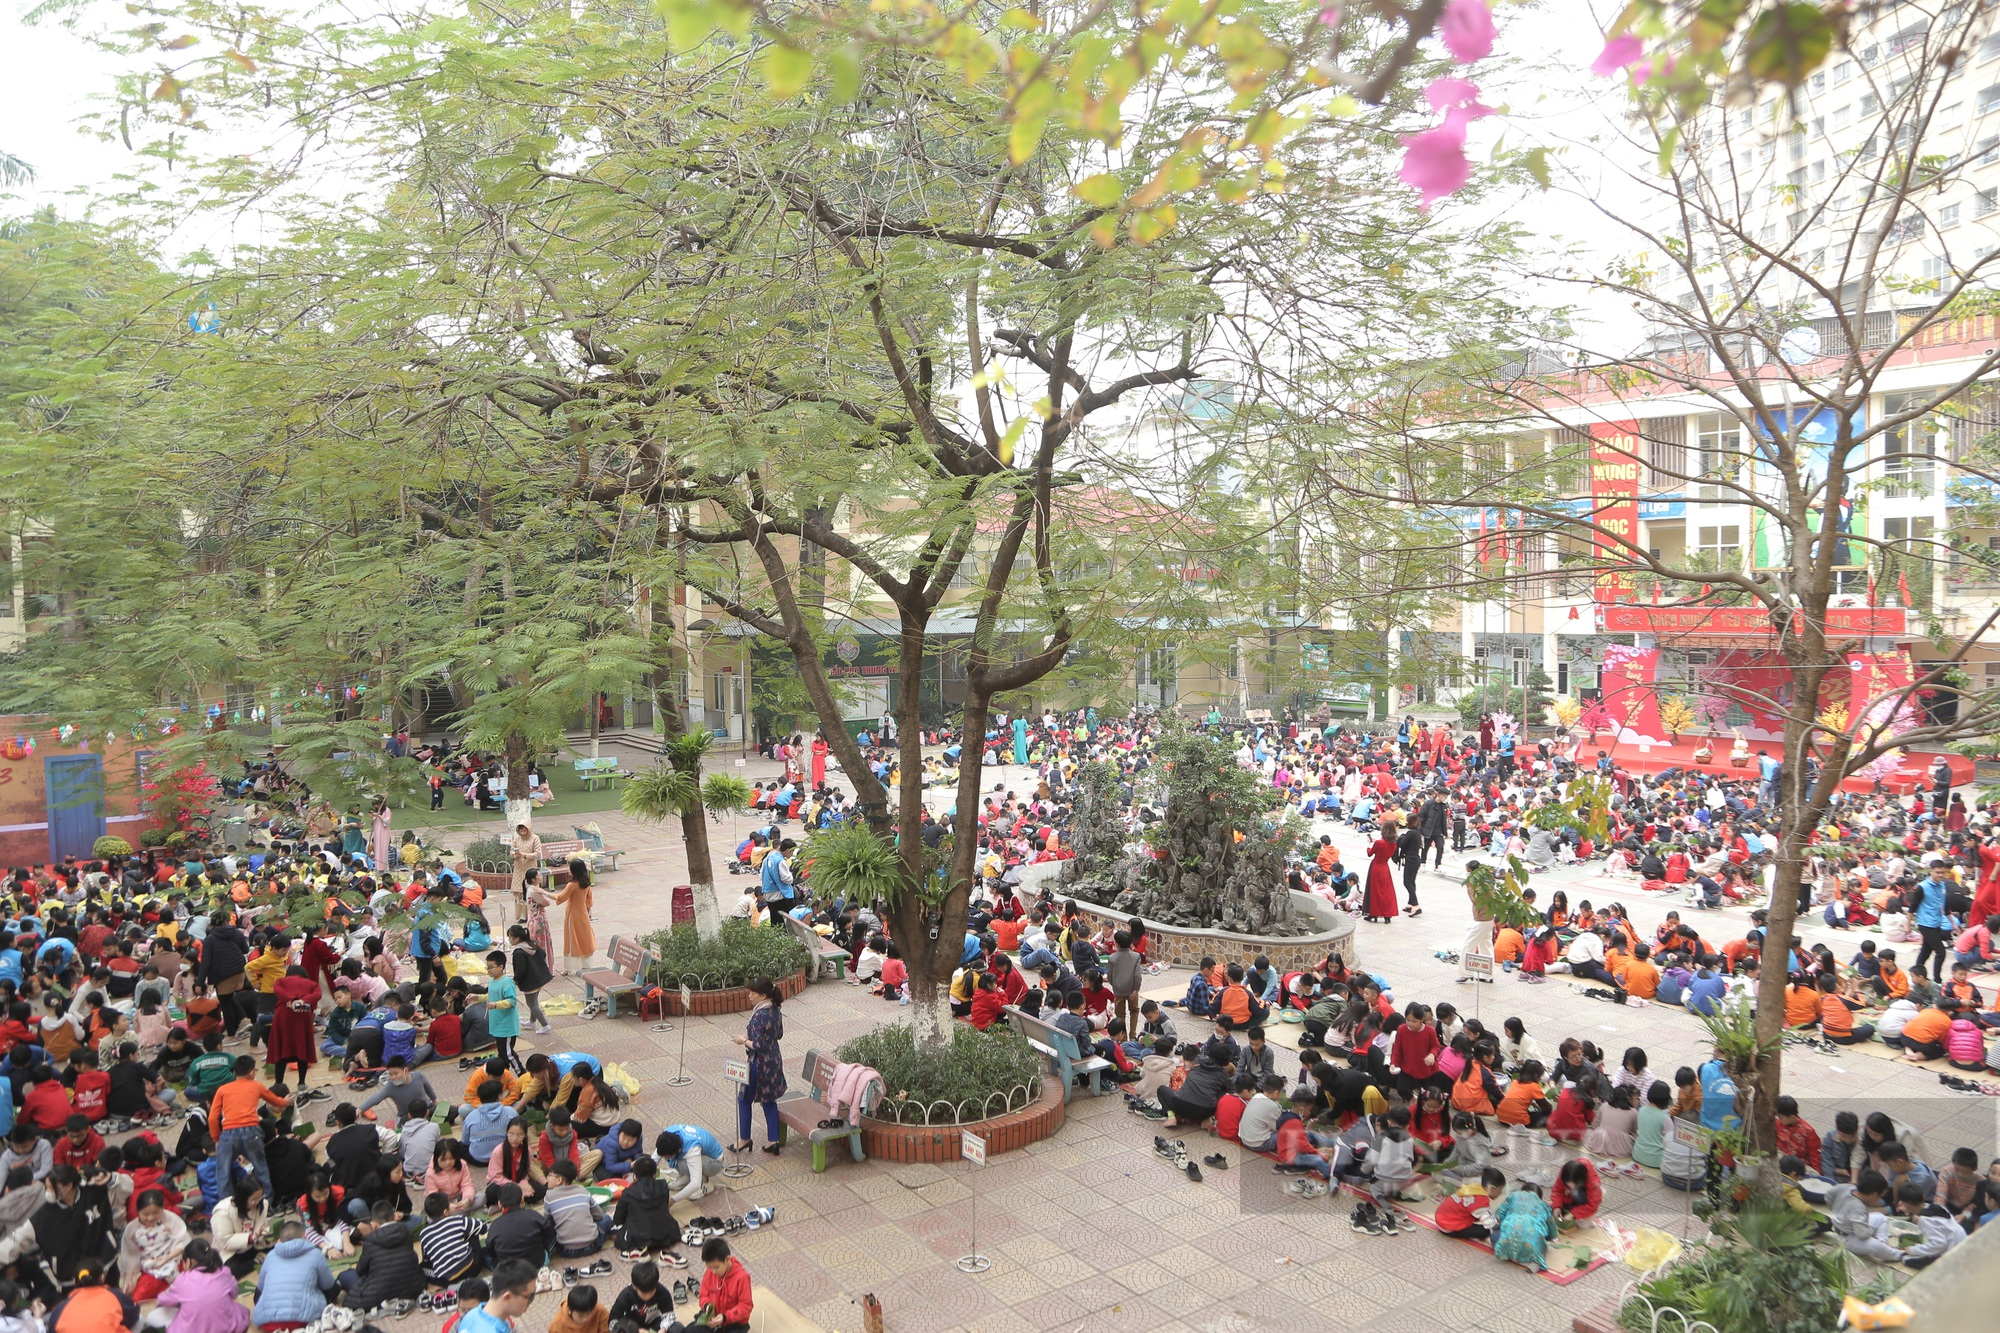 Gần 2.000 học sinh tiểu học ở Hà Nội trải nghiệm gói bánh chưng trên sân trường - Ảnh 1.